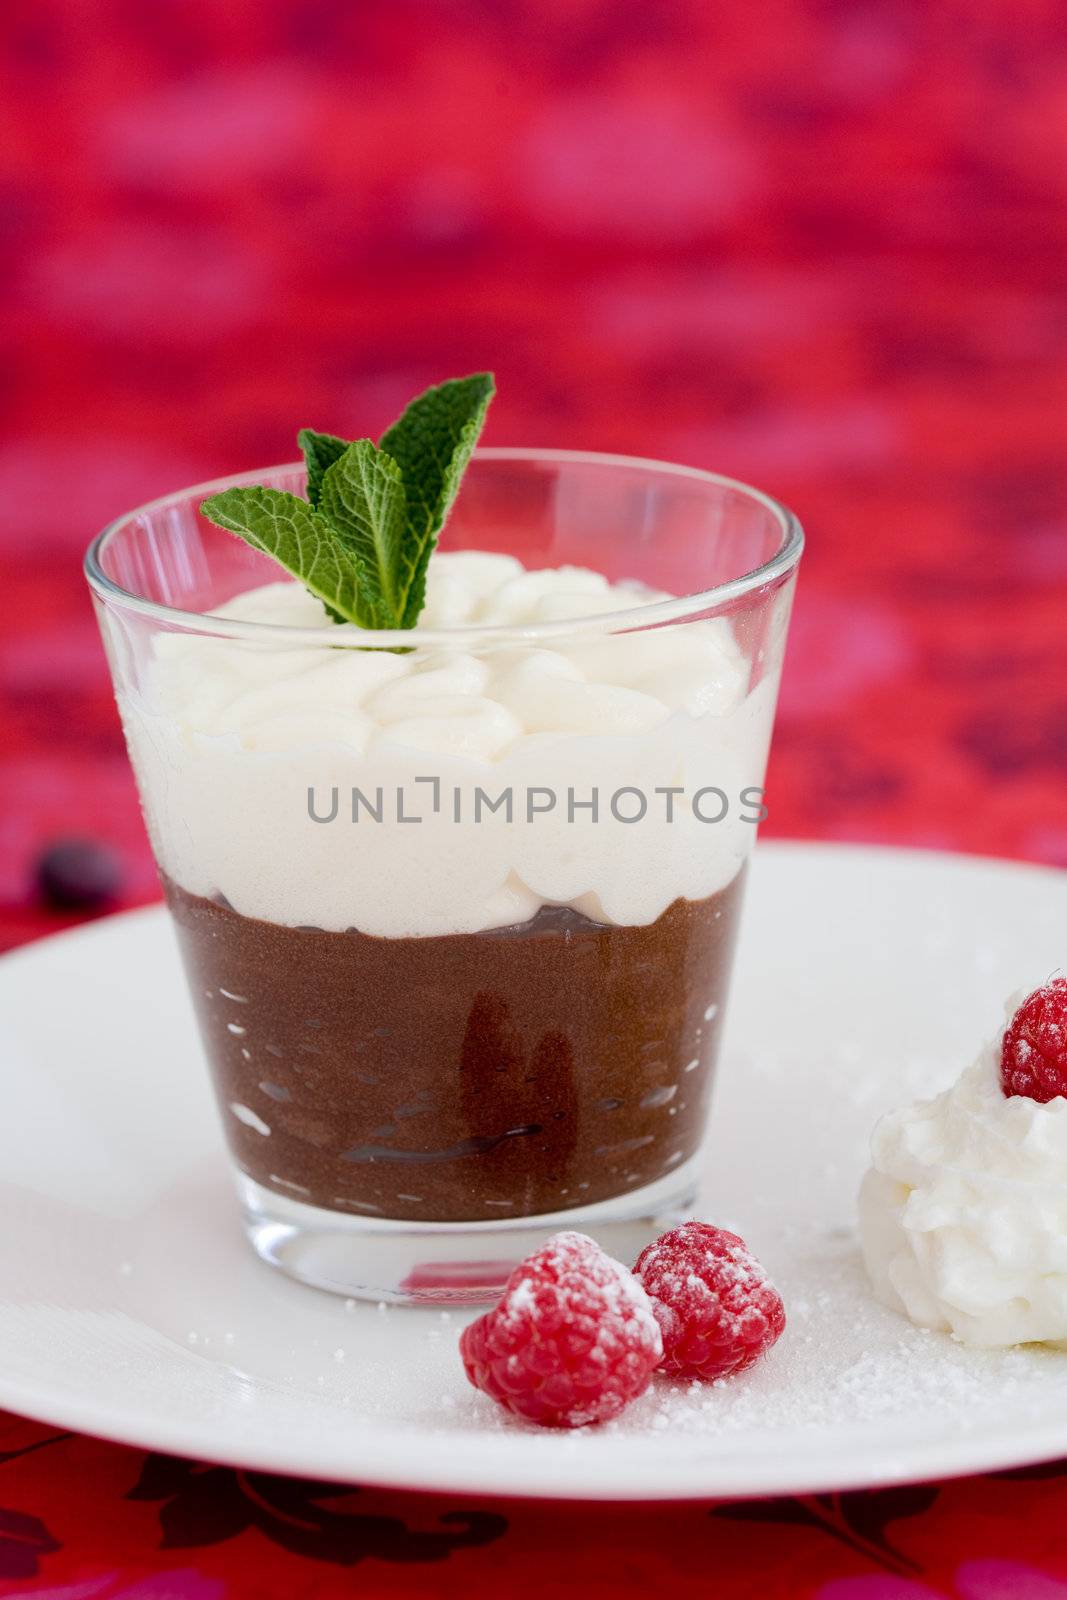 Chocolate dessert by Fotosmurf